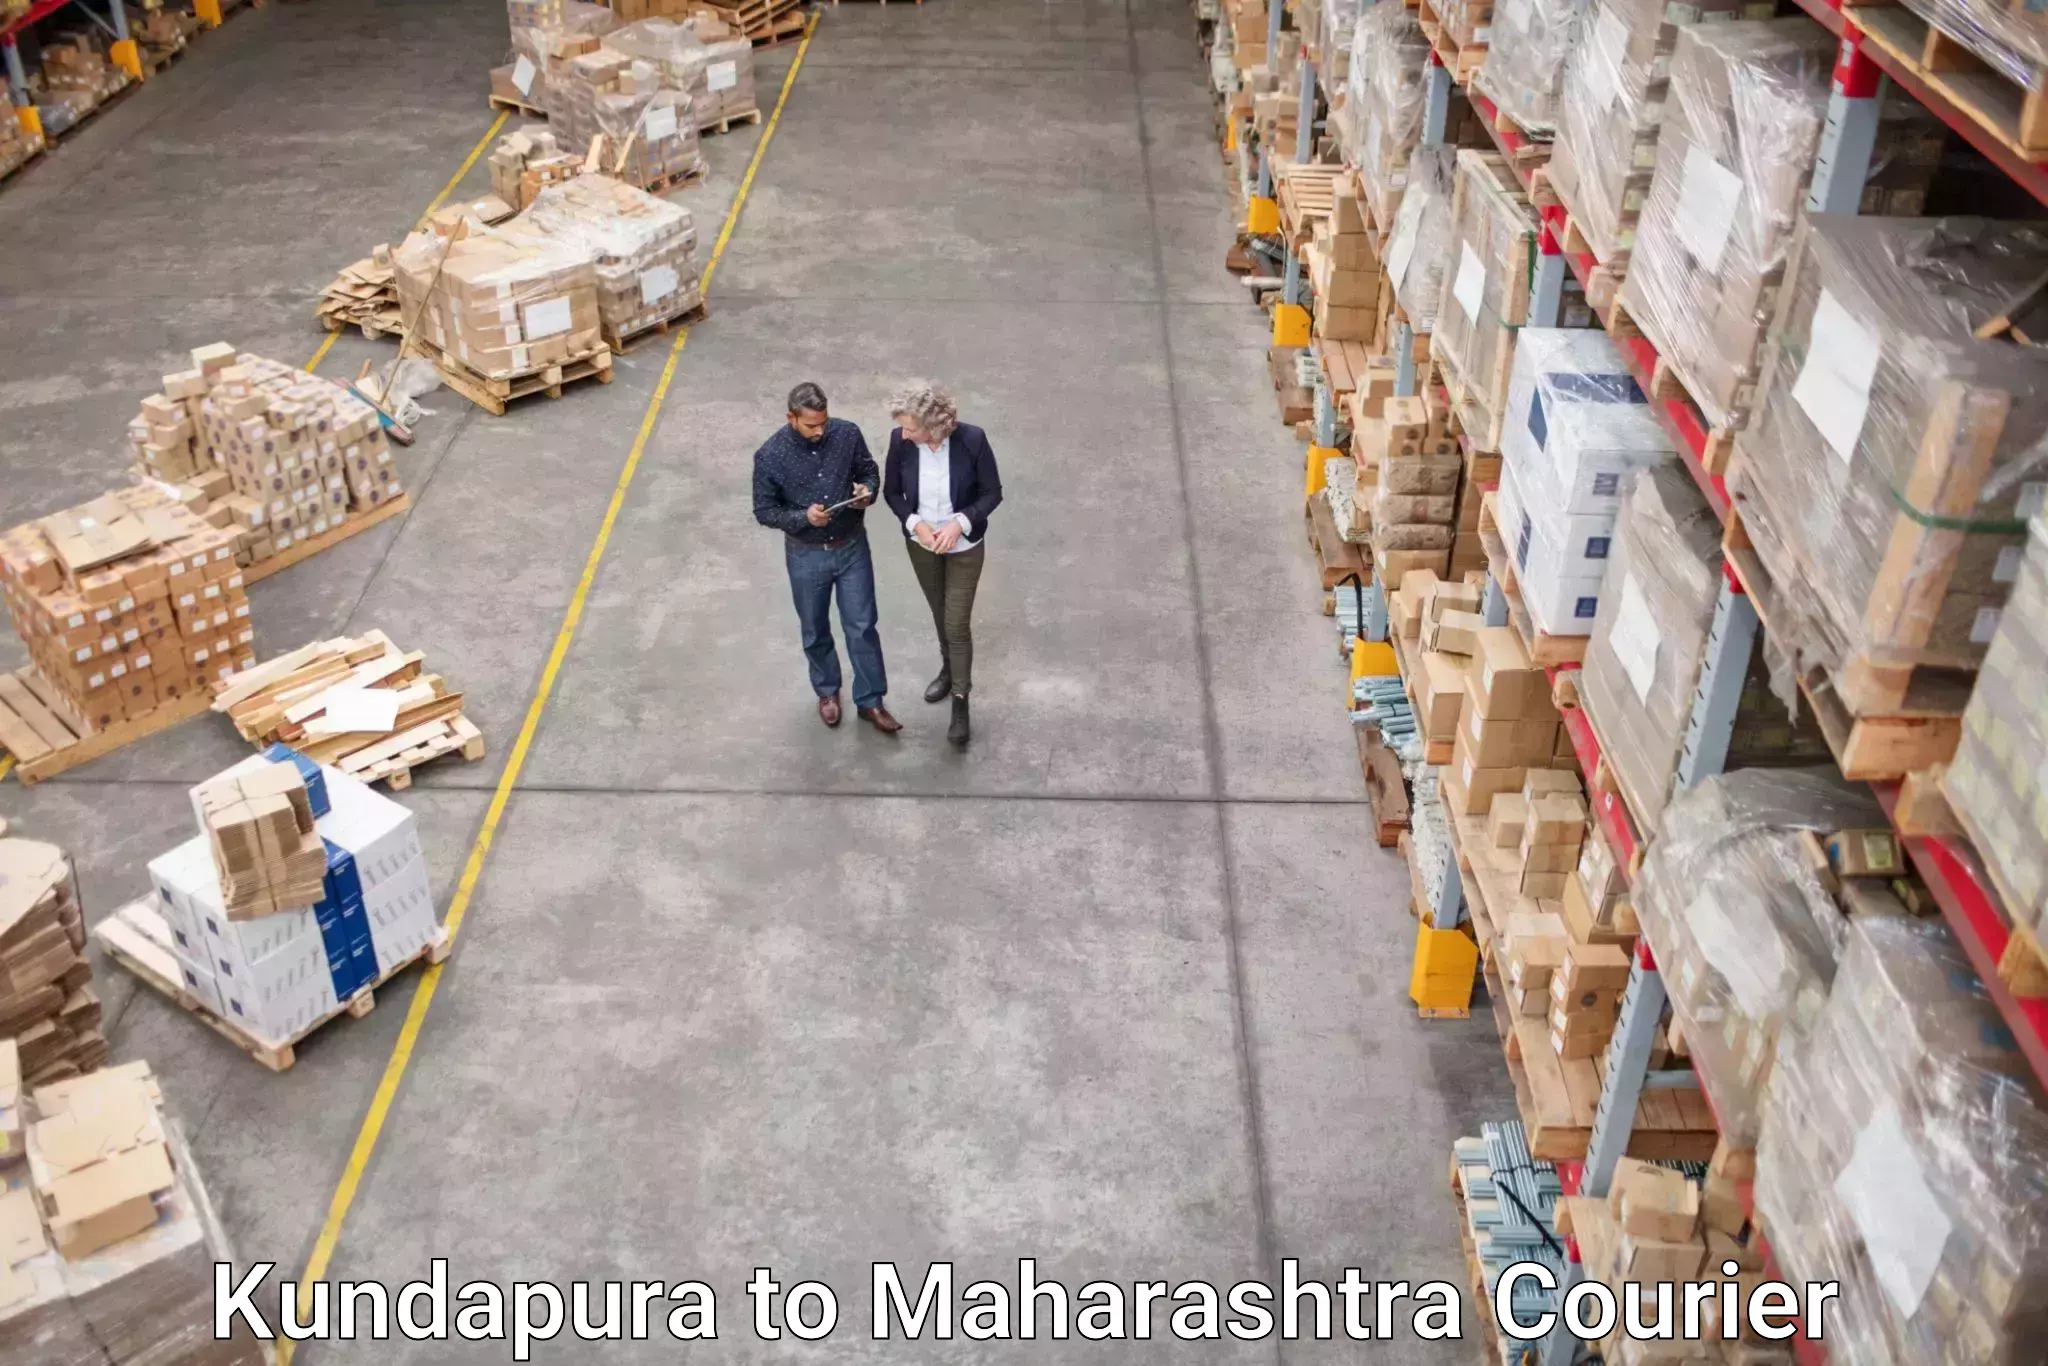 Medical delivery services Kundapura to Maharashtra